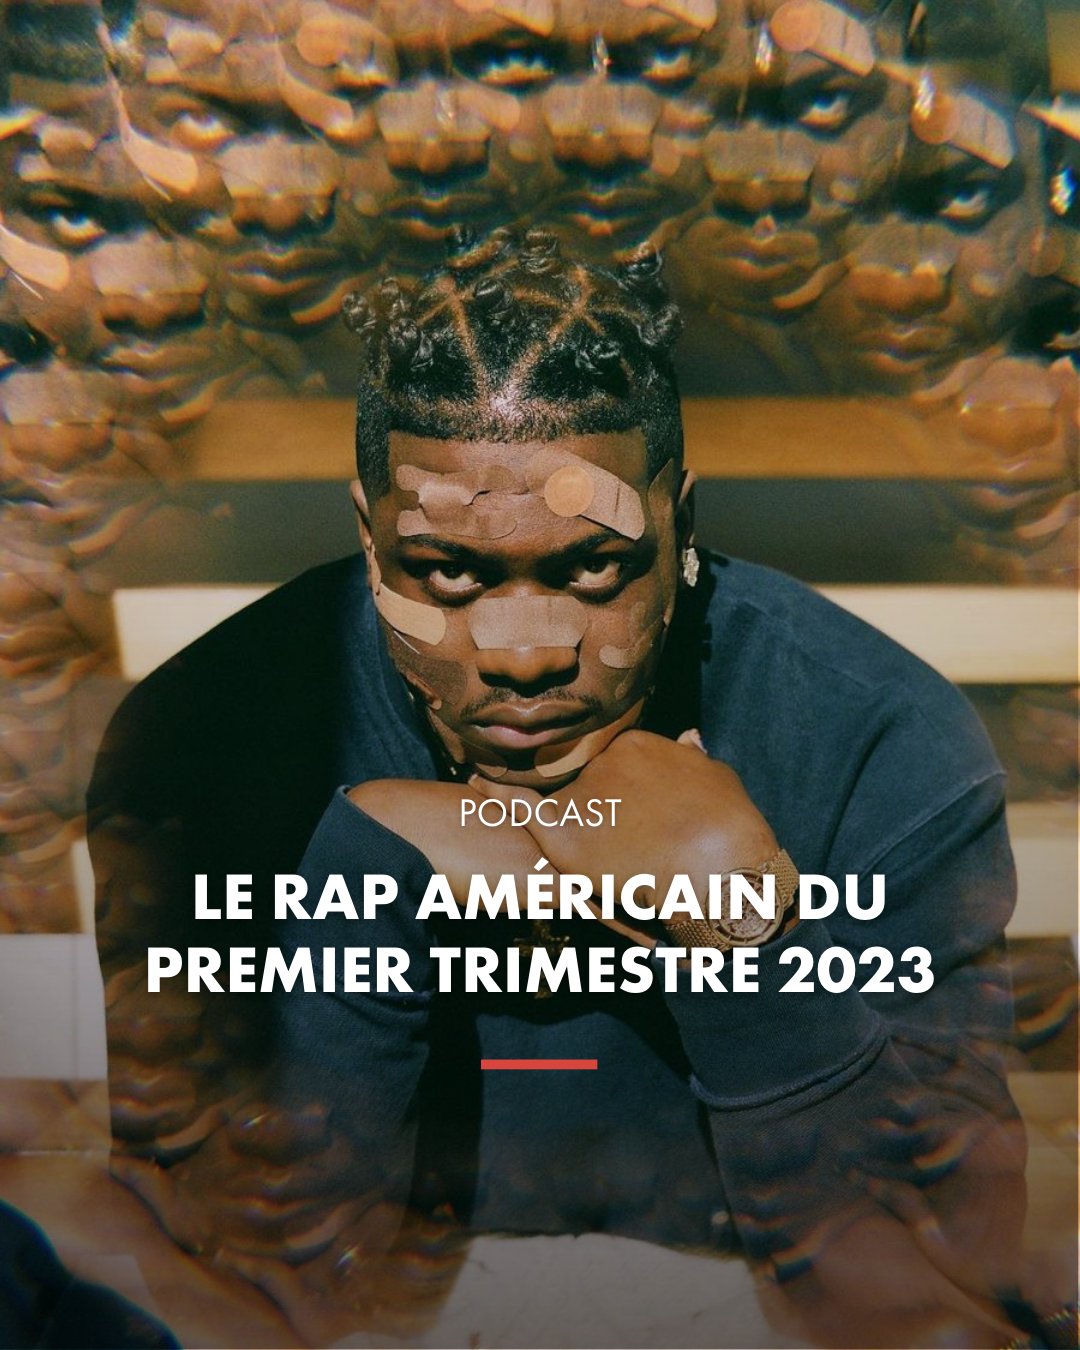 Le rap français du deuxième trimestre 2022 - Abcdr du Son